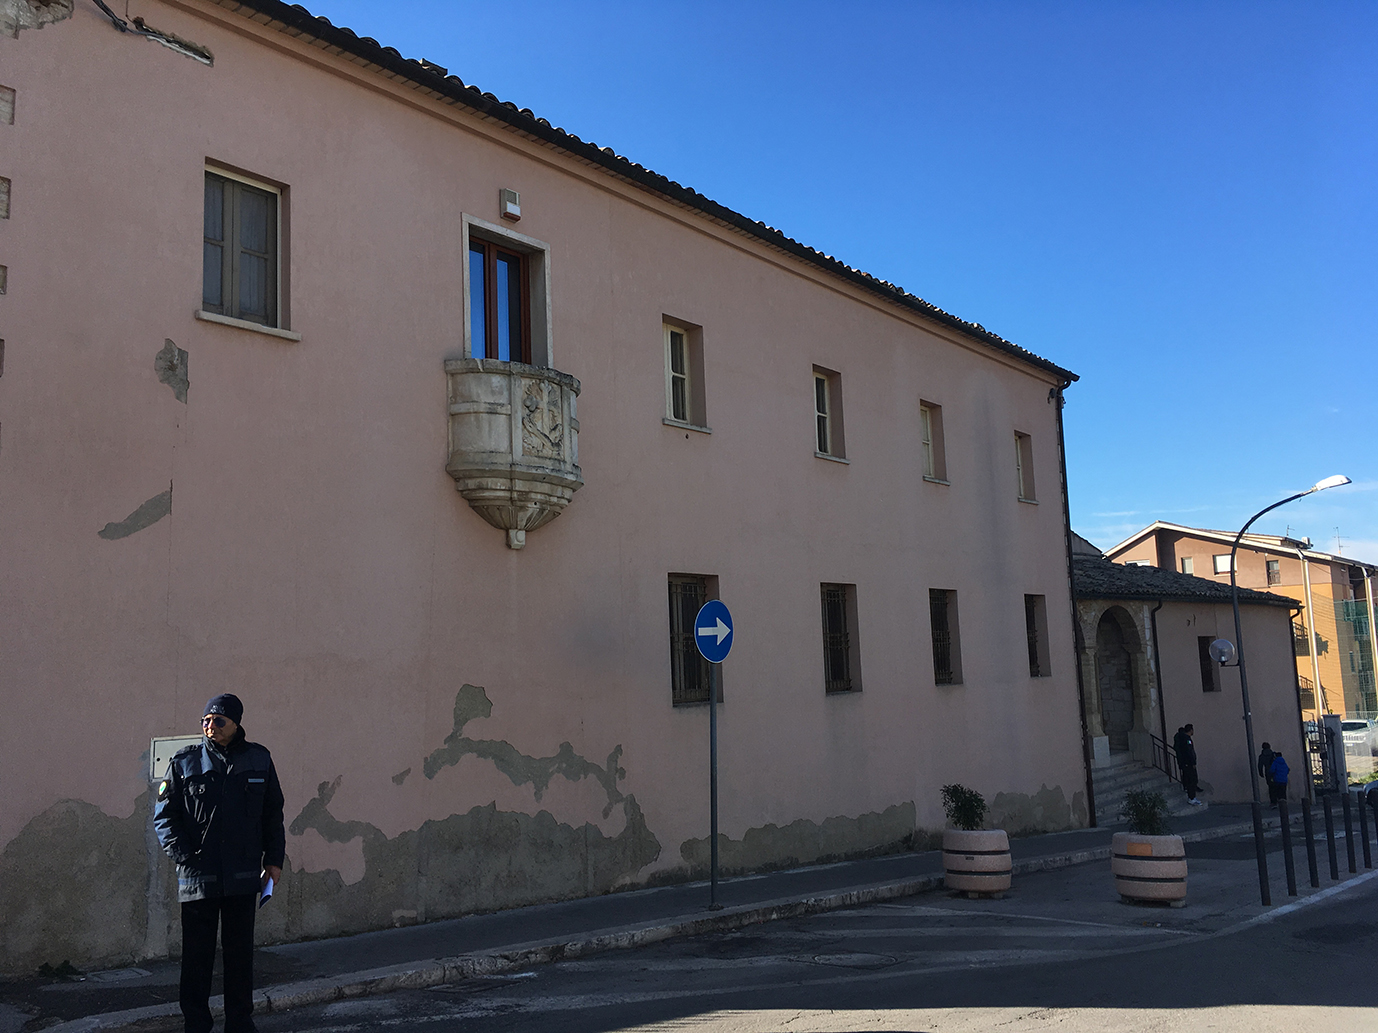 Convento dei Padri Cappuccini (convento, cappuccino) - Guardiagrele (CH) 